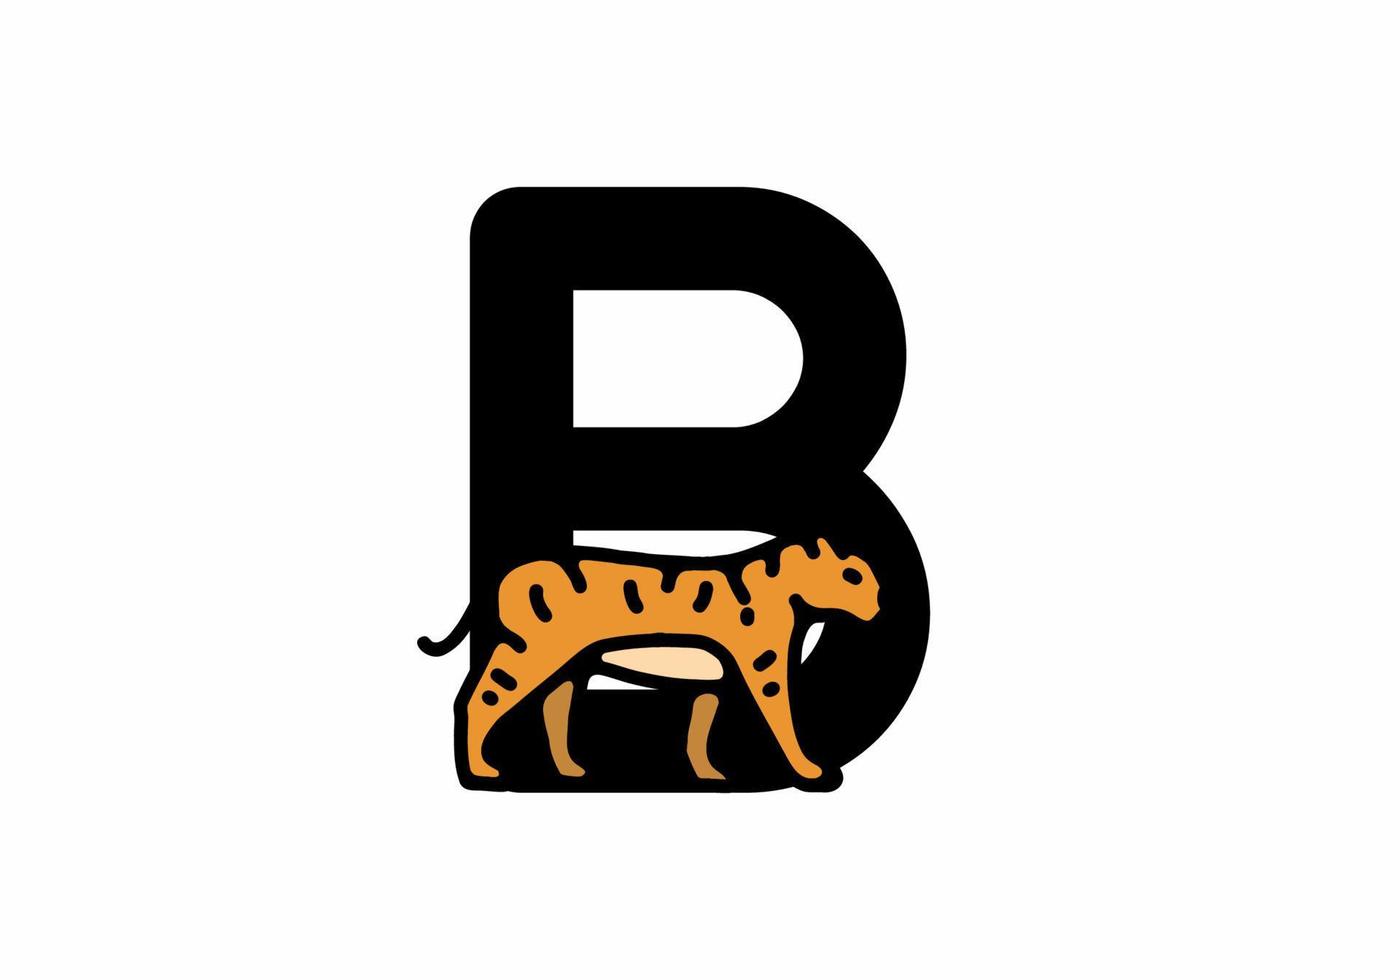 lijntekeningen illustratie van tijger met b beginletter vector